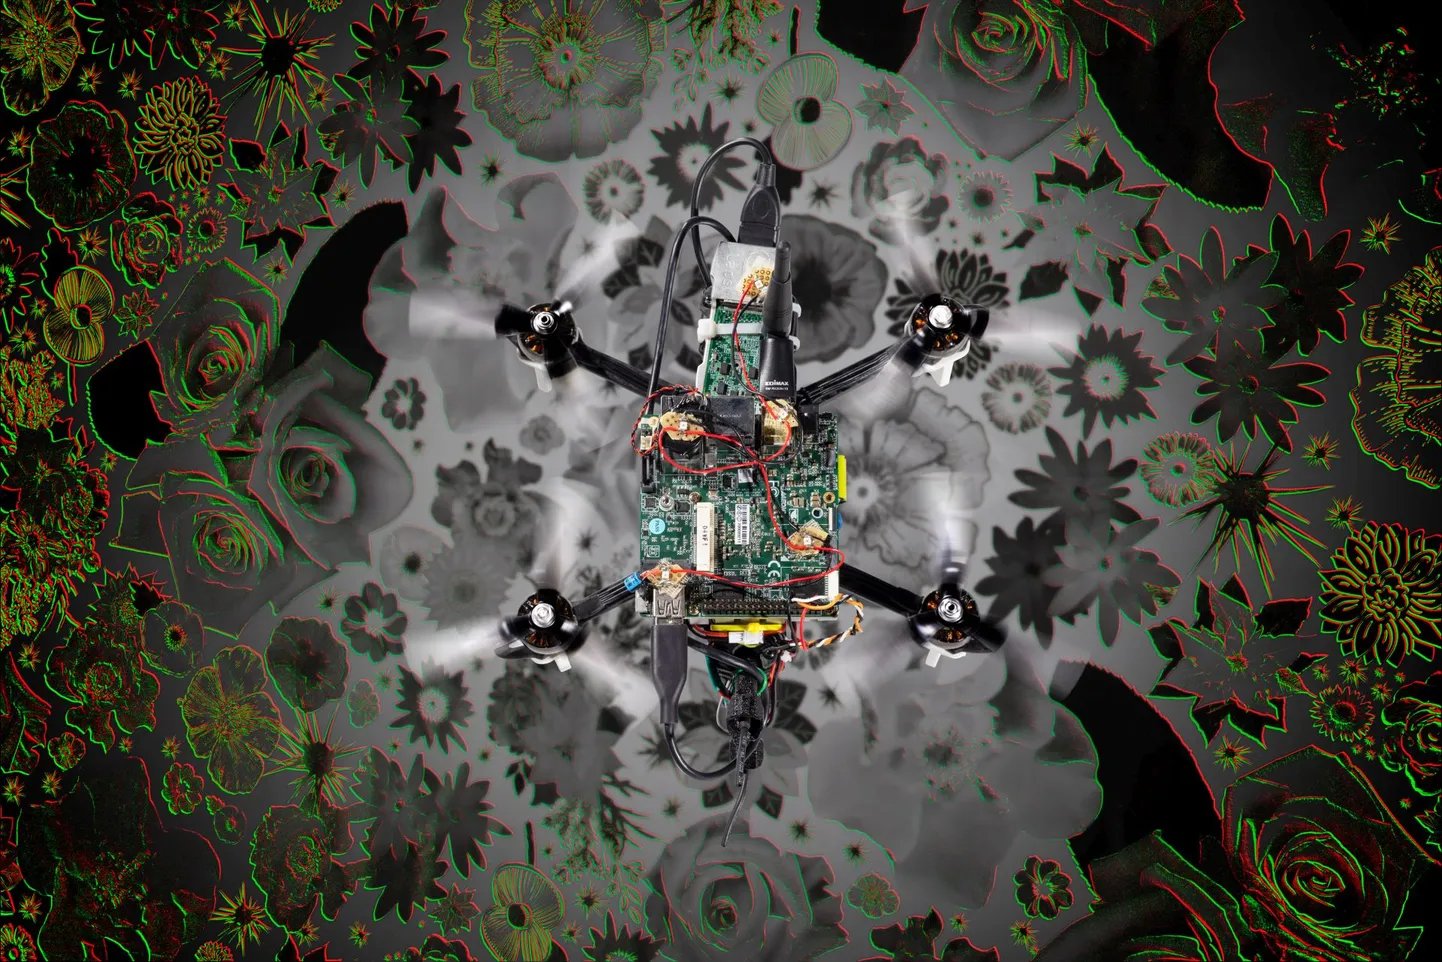 Kui neuromorfsed ajud töötavad tõhusalt, saab nende abil panna lendama ka putukasuurused robotid, sest selline lahendus võtab väga vähe energiat ja mahub kompaktsesse kesta.